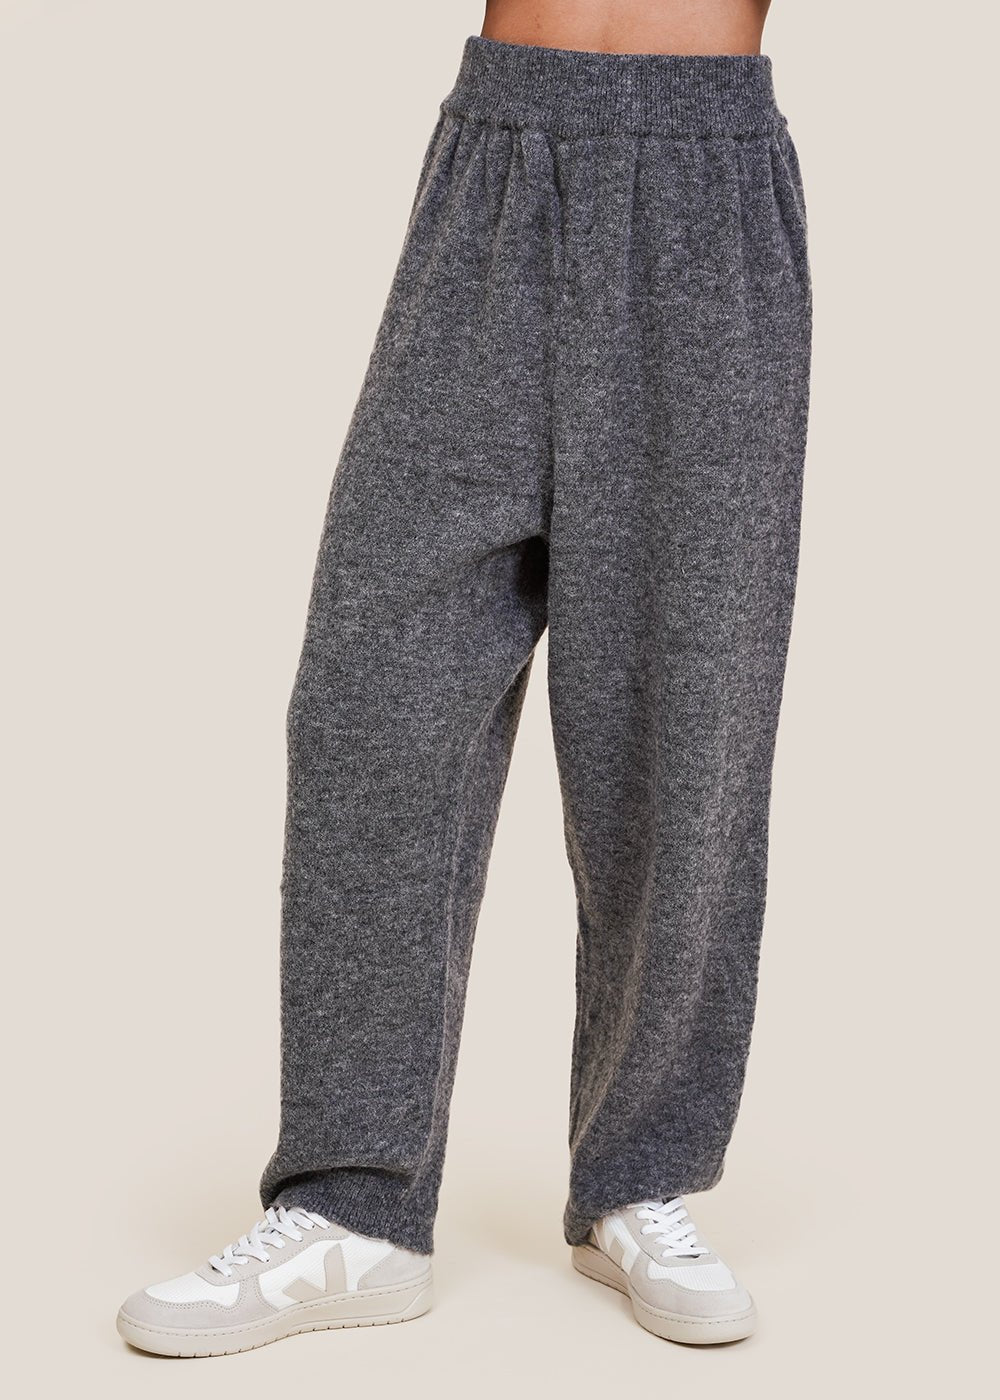 Grey Baby Alpaca Knit Pants